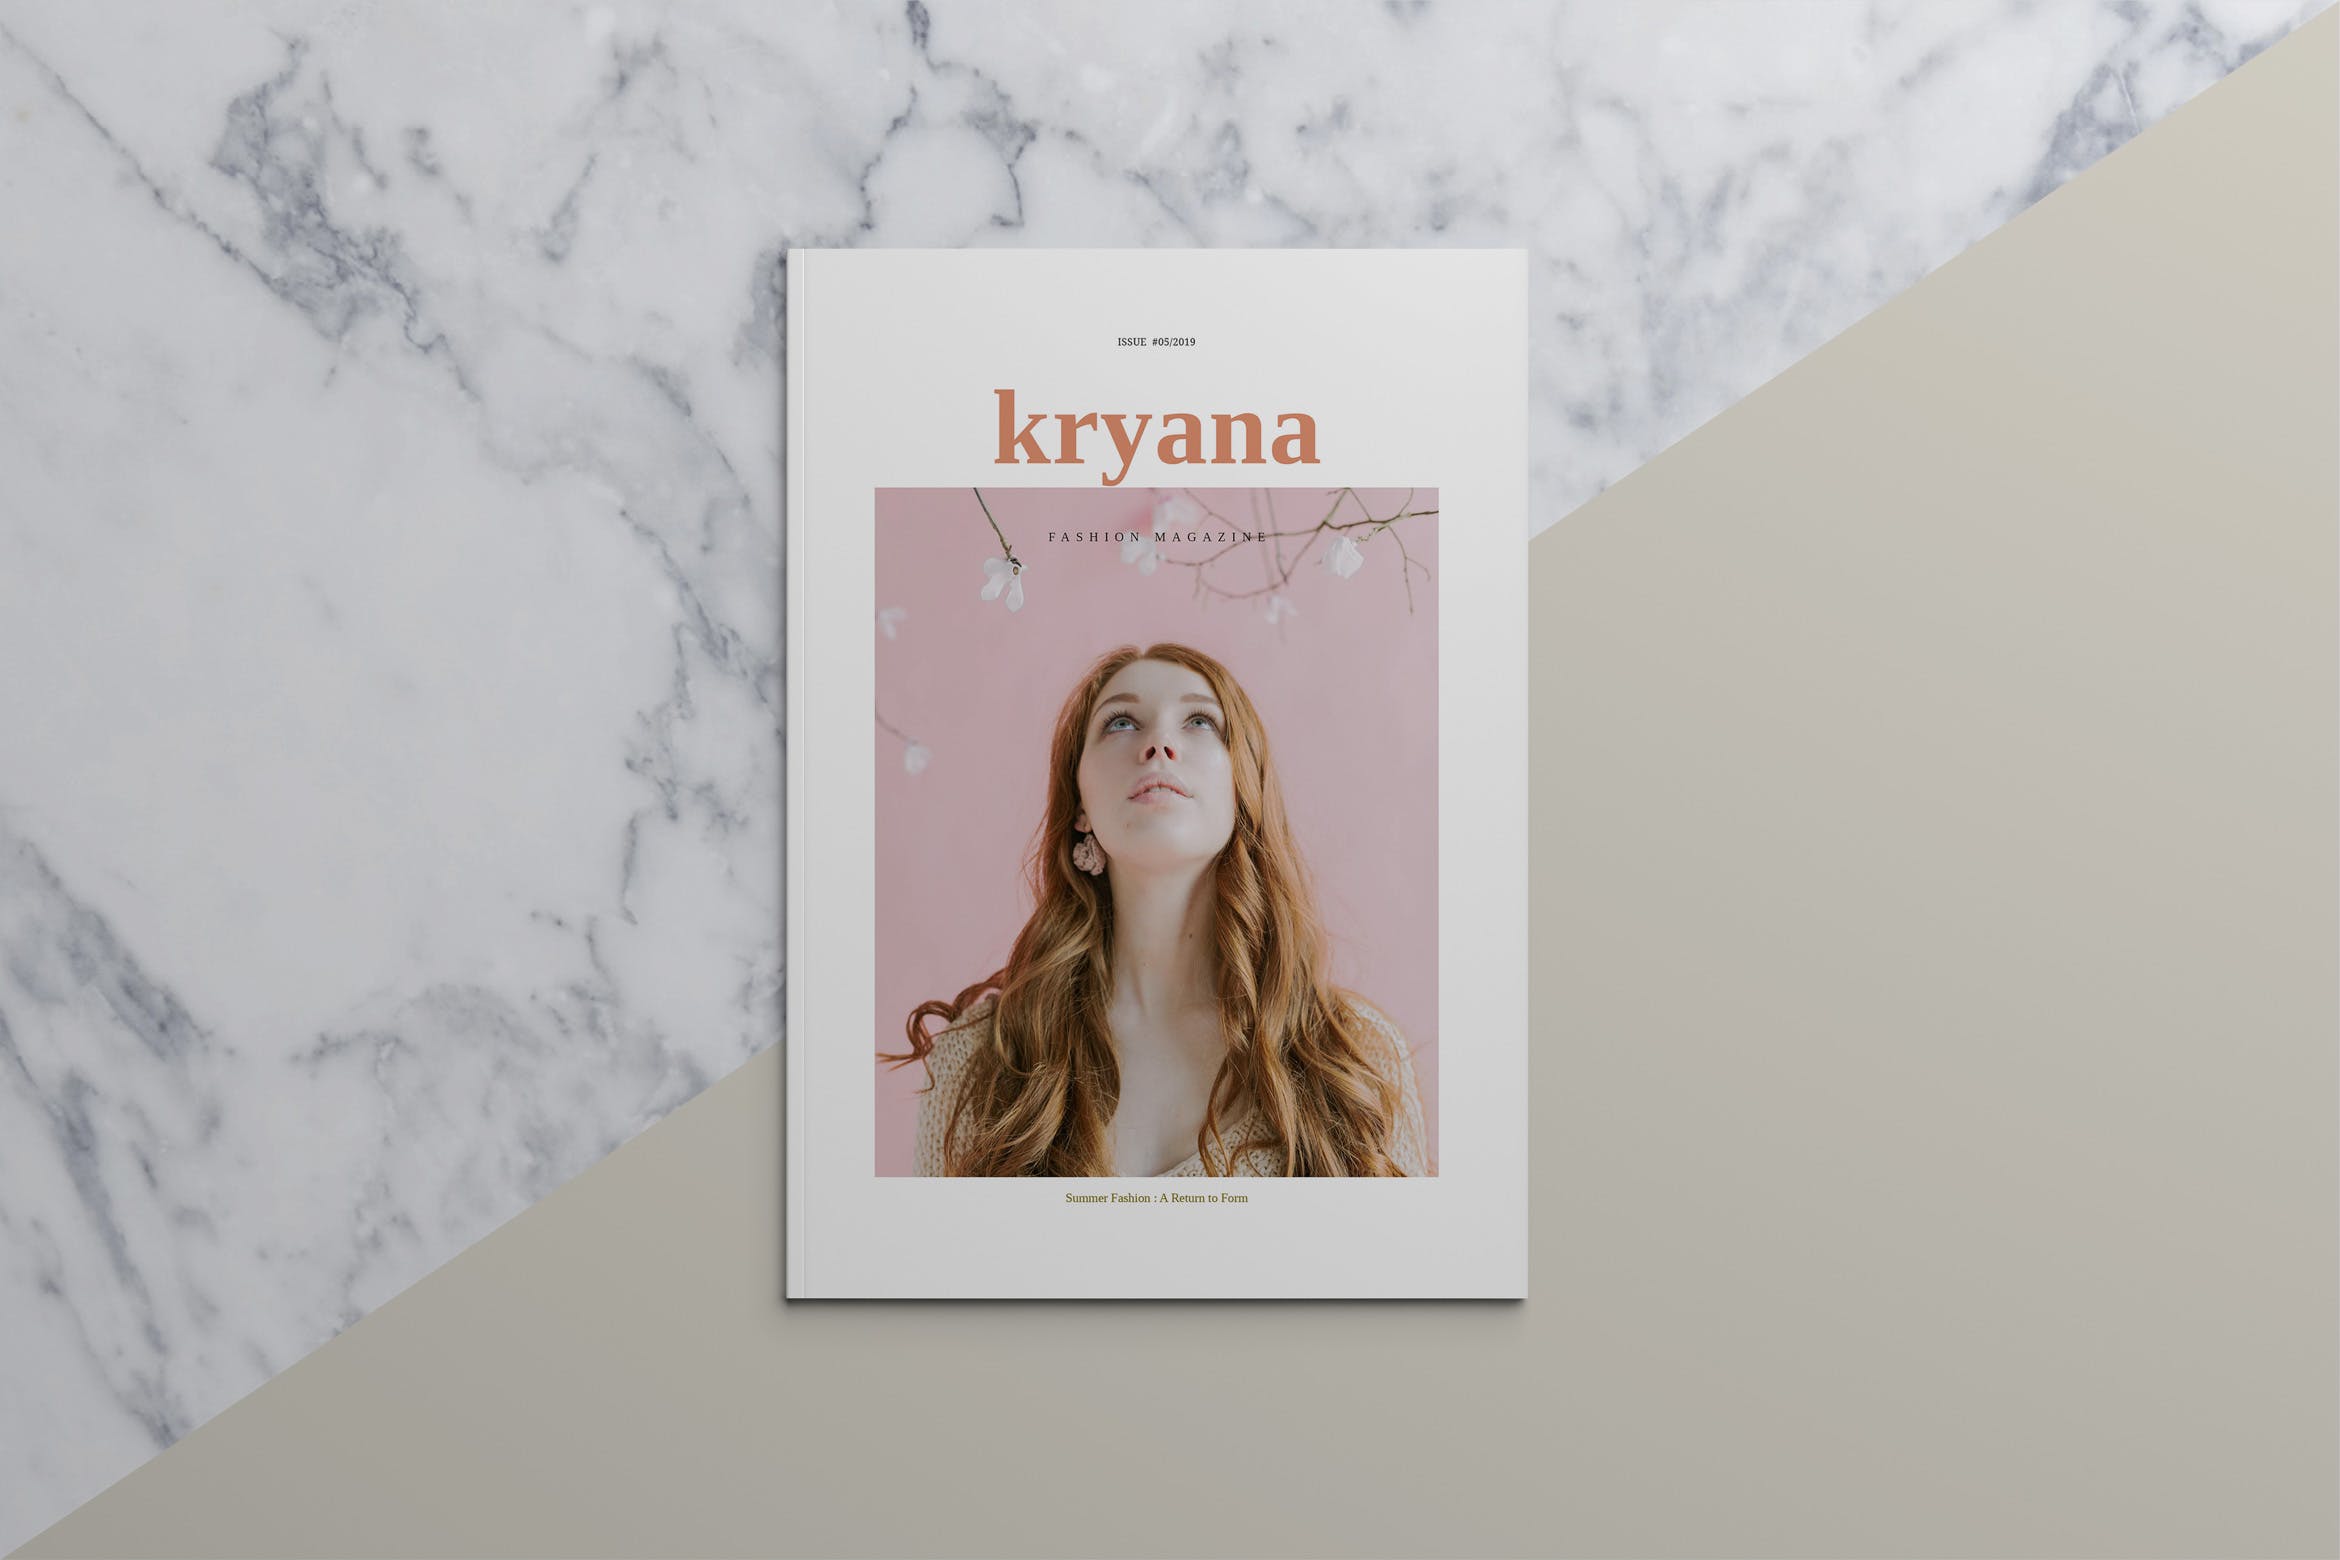 时尚主义北欧风格16图库精选杂志设计模板 KRYANA – Fashion Magazine插图